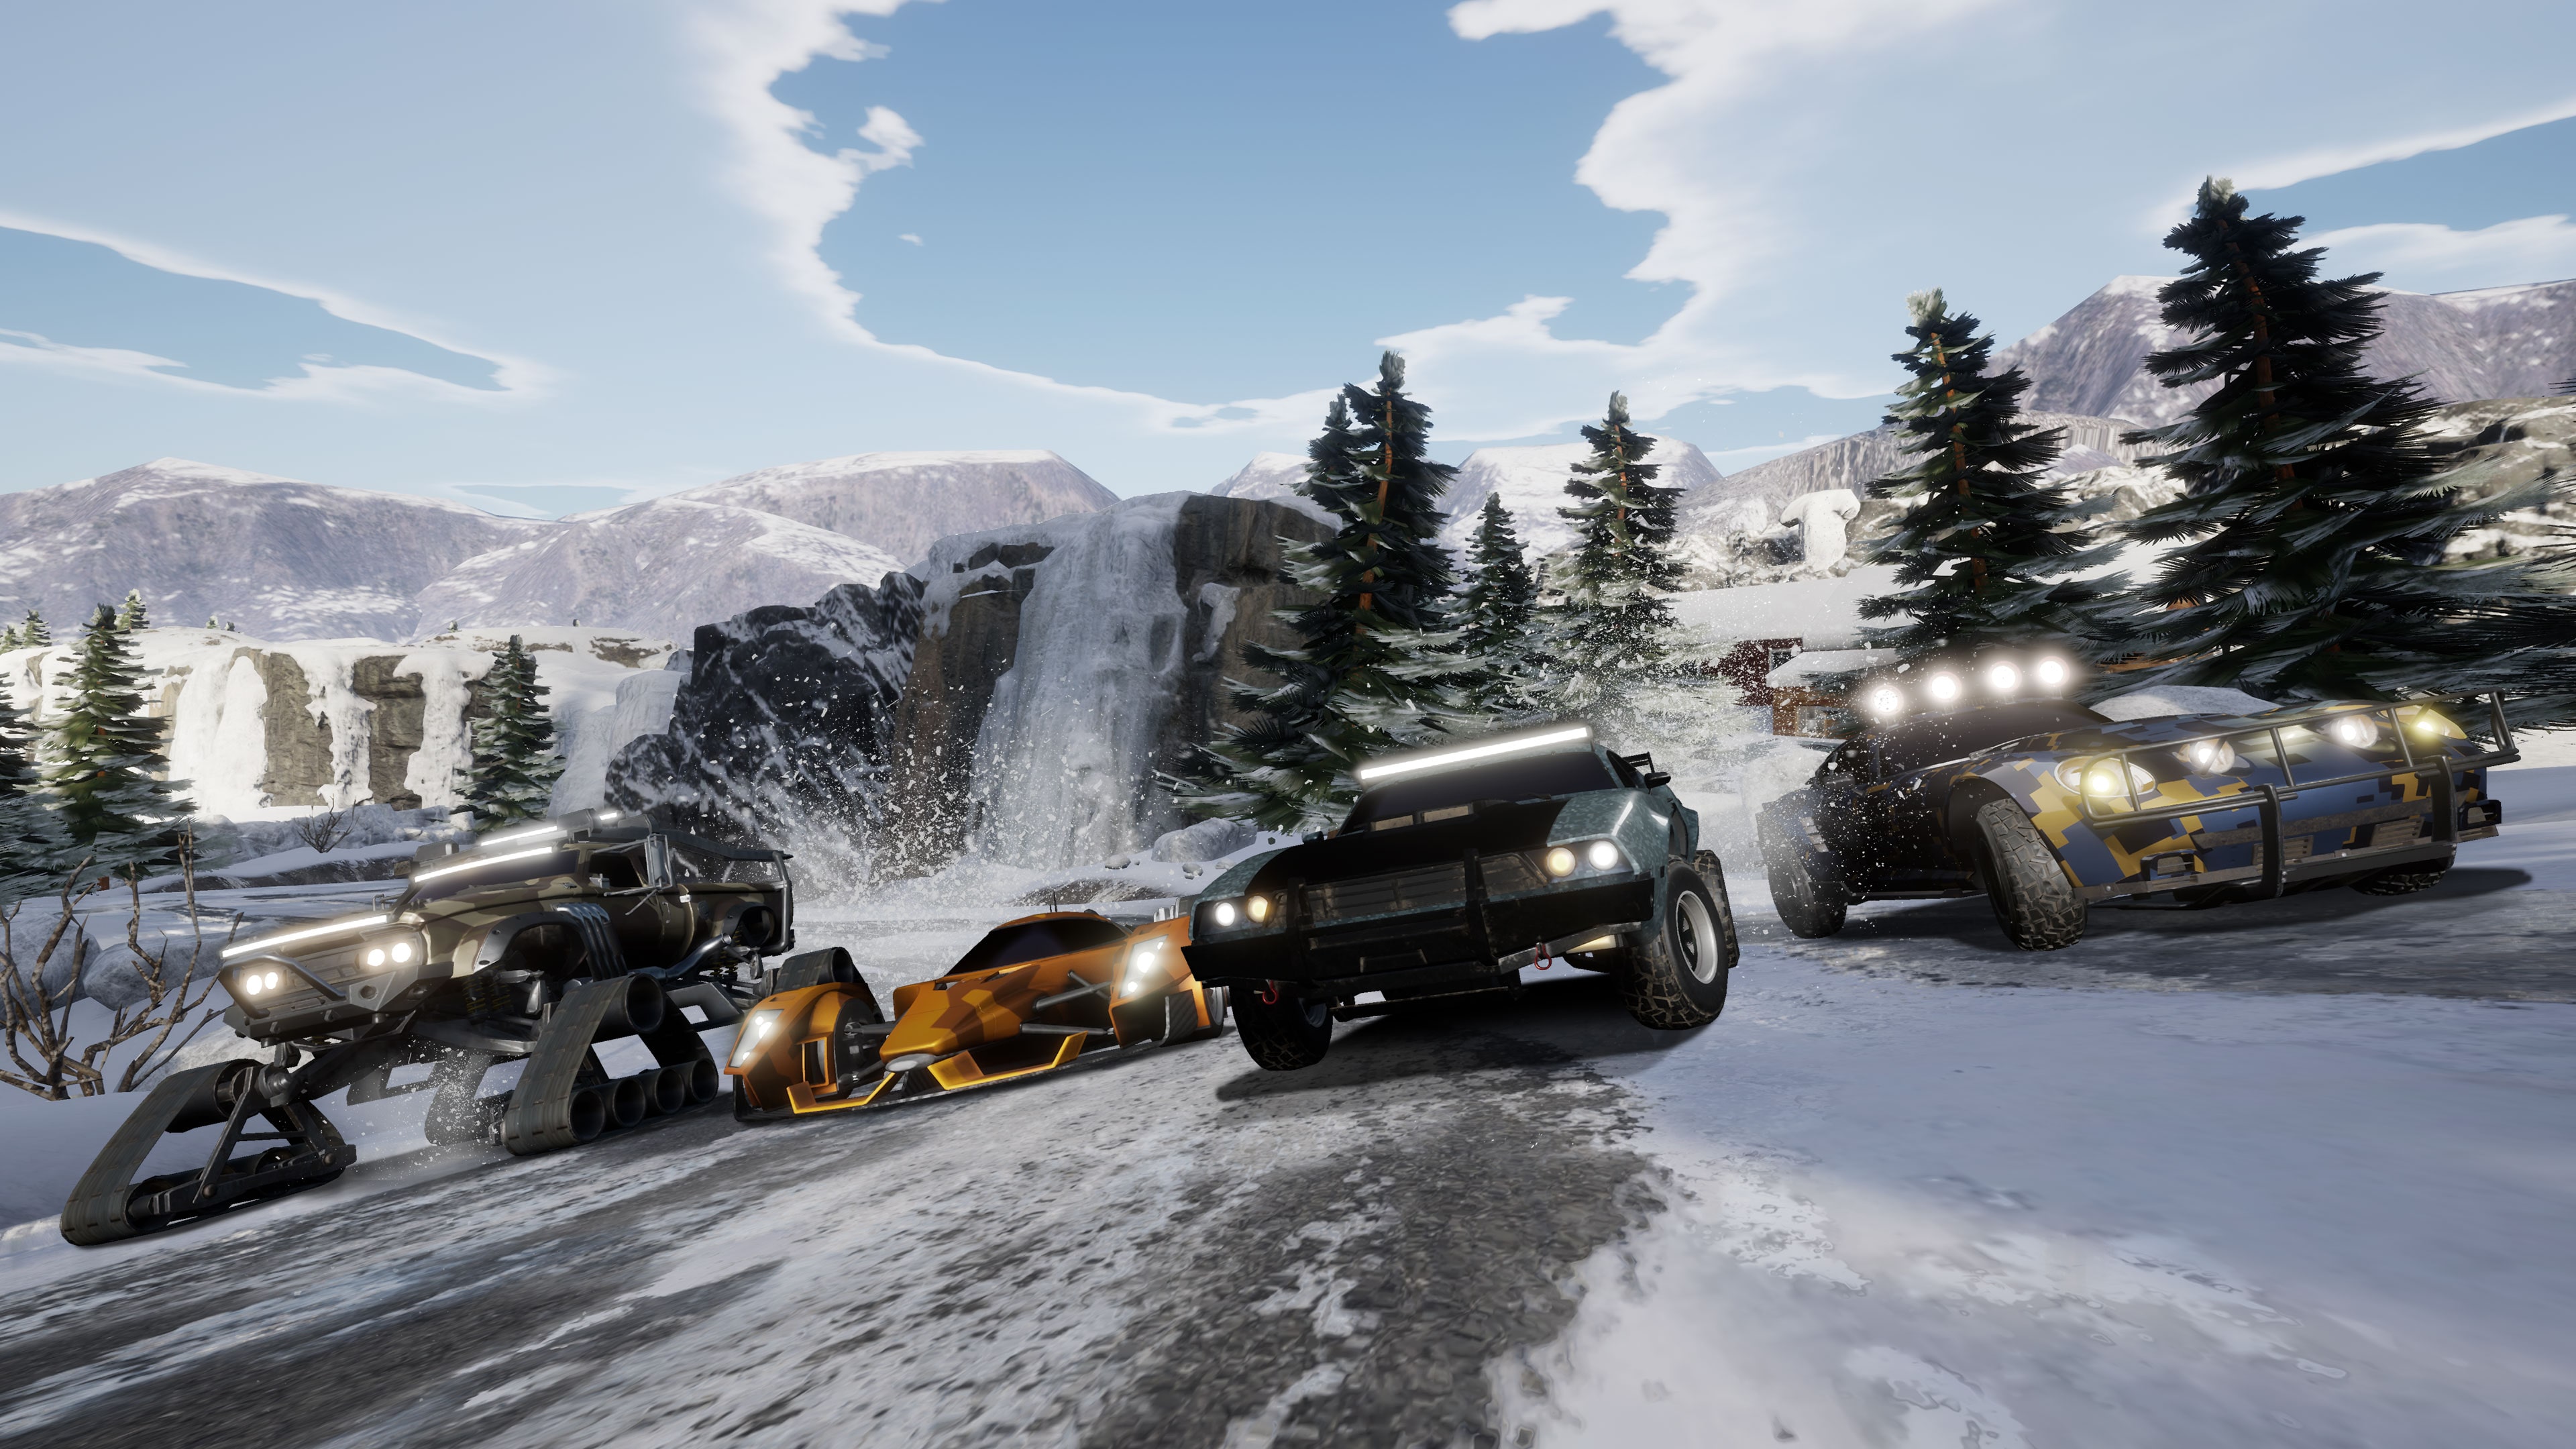 Fast & Furious: Spy Racers El Retorno de SH1FT3R - Reto ártico